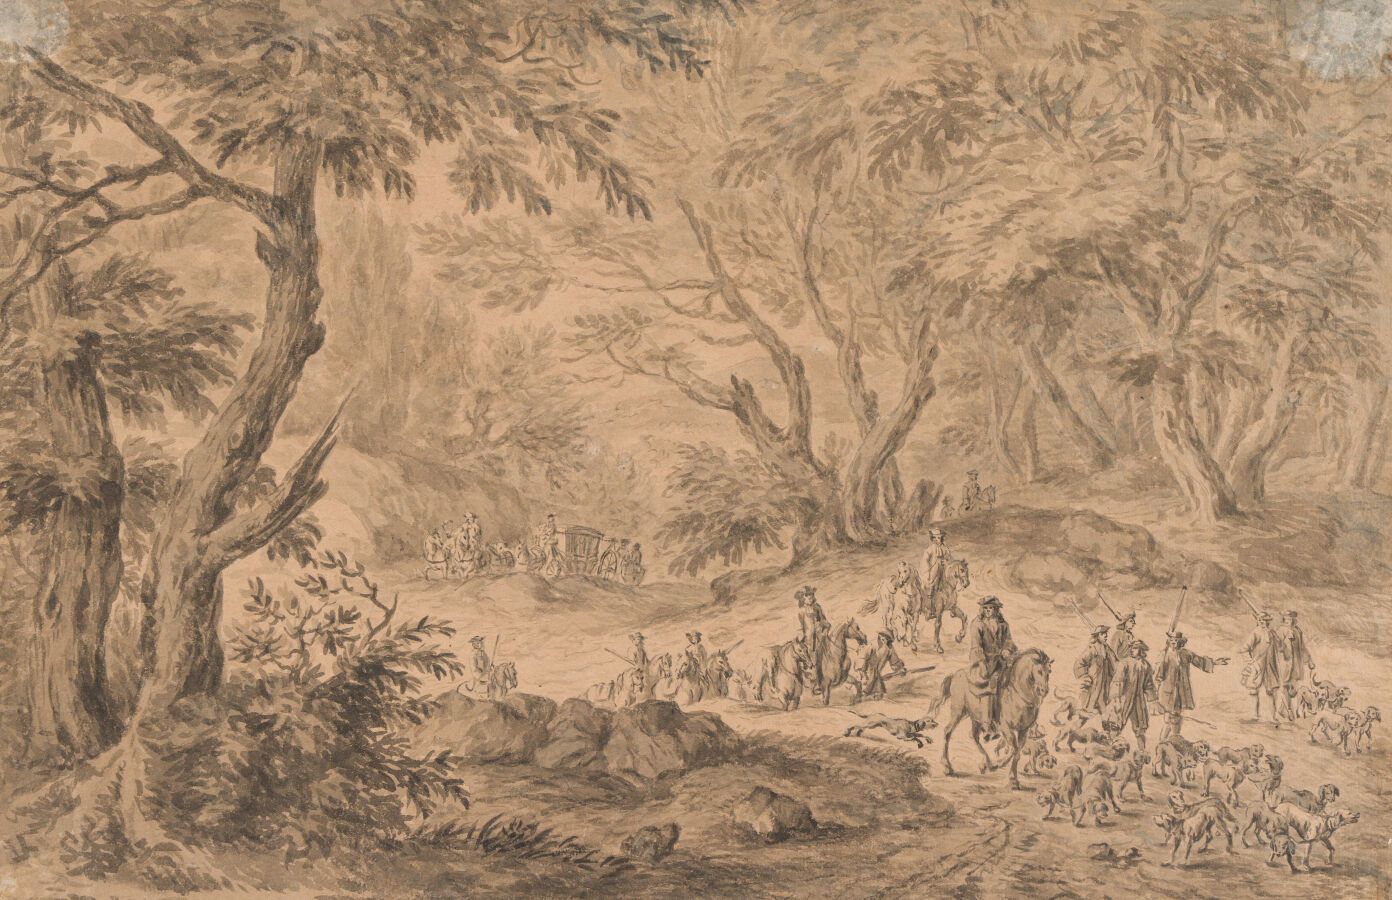 Null 10. Adam Frans VAN DER MEULEN (1632 - 1690)

Crew and their pack in an unde&hellip;